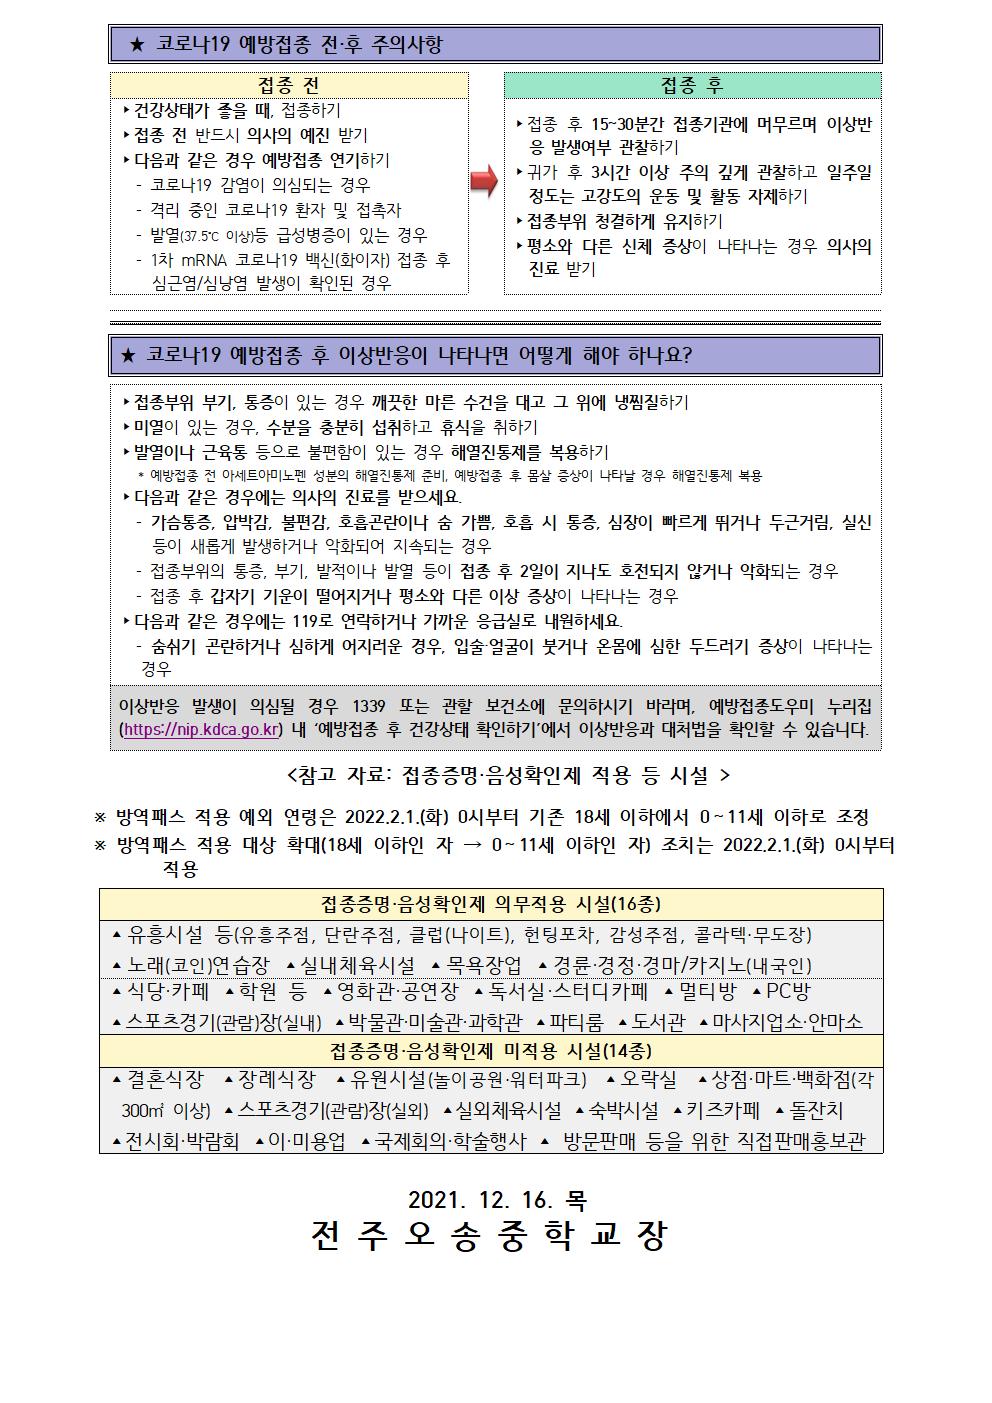 코로나 19 예방접종 추가 안내 가정통신문(12.16.)002